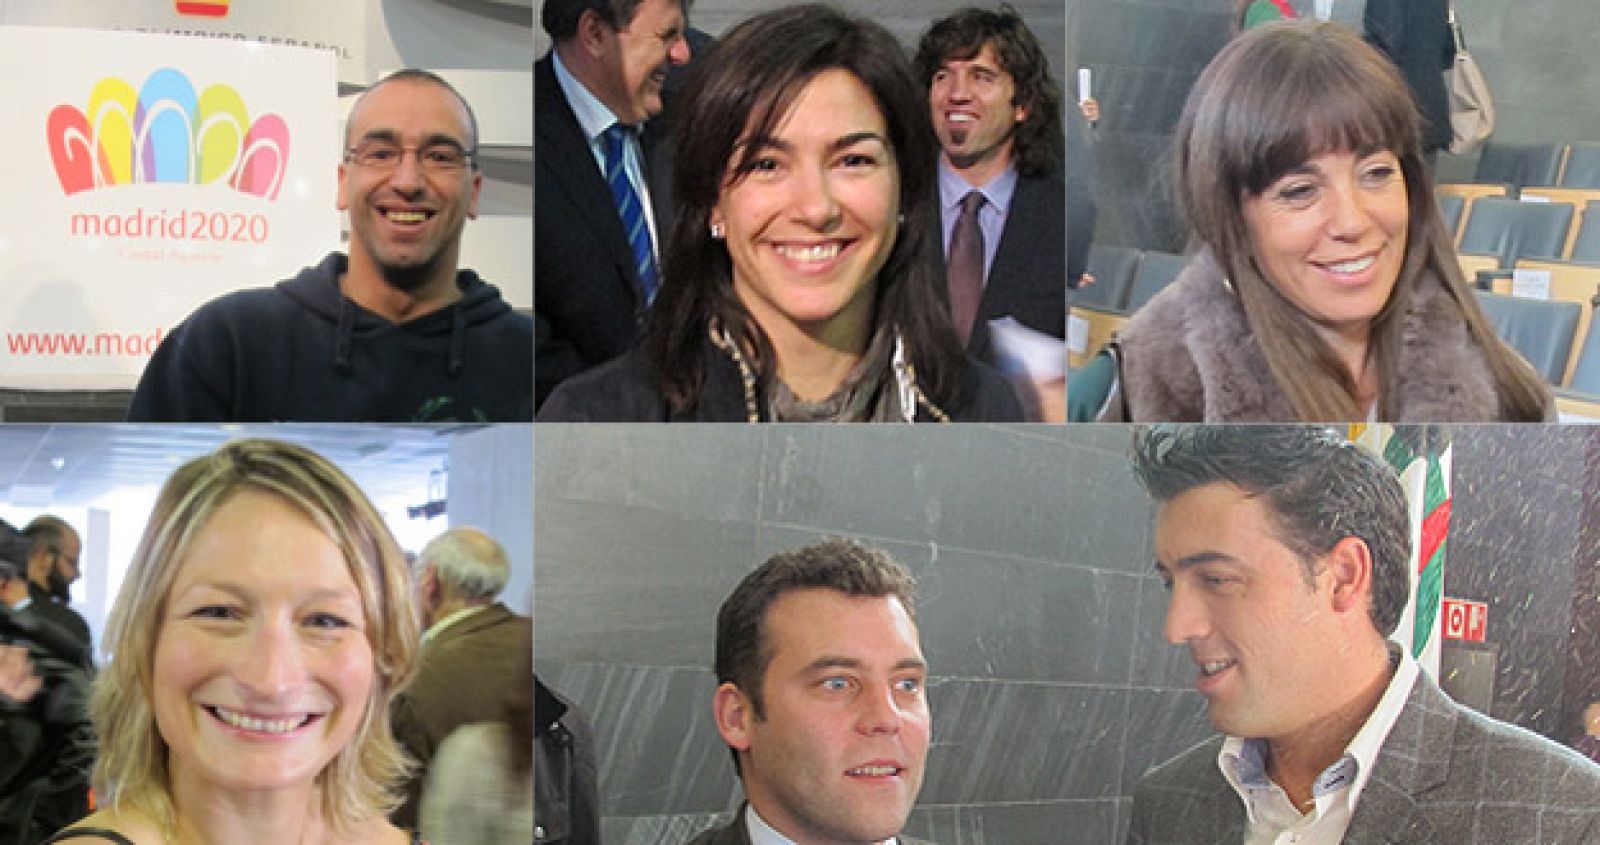 Los deportistas Llambi, Rienda, Coghen (arriba de izquierda a derecha), Álvarez, Carballo y Pirri (abajo de izquierda a derecha) apoyan la candidatura de Madrid 2020.